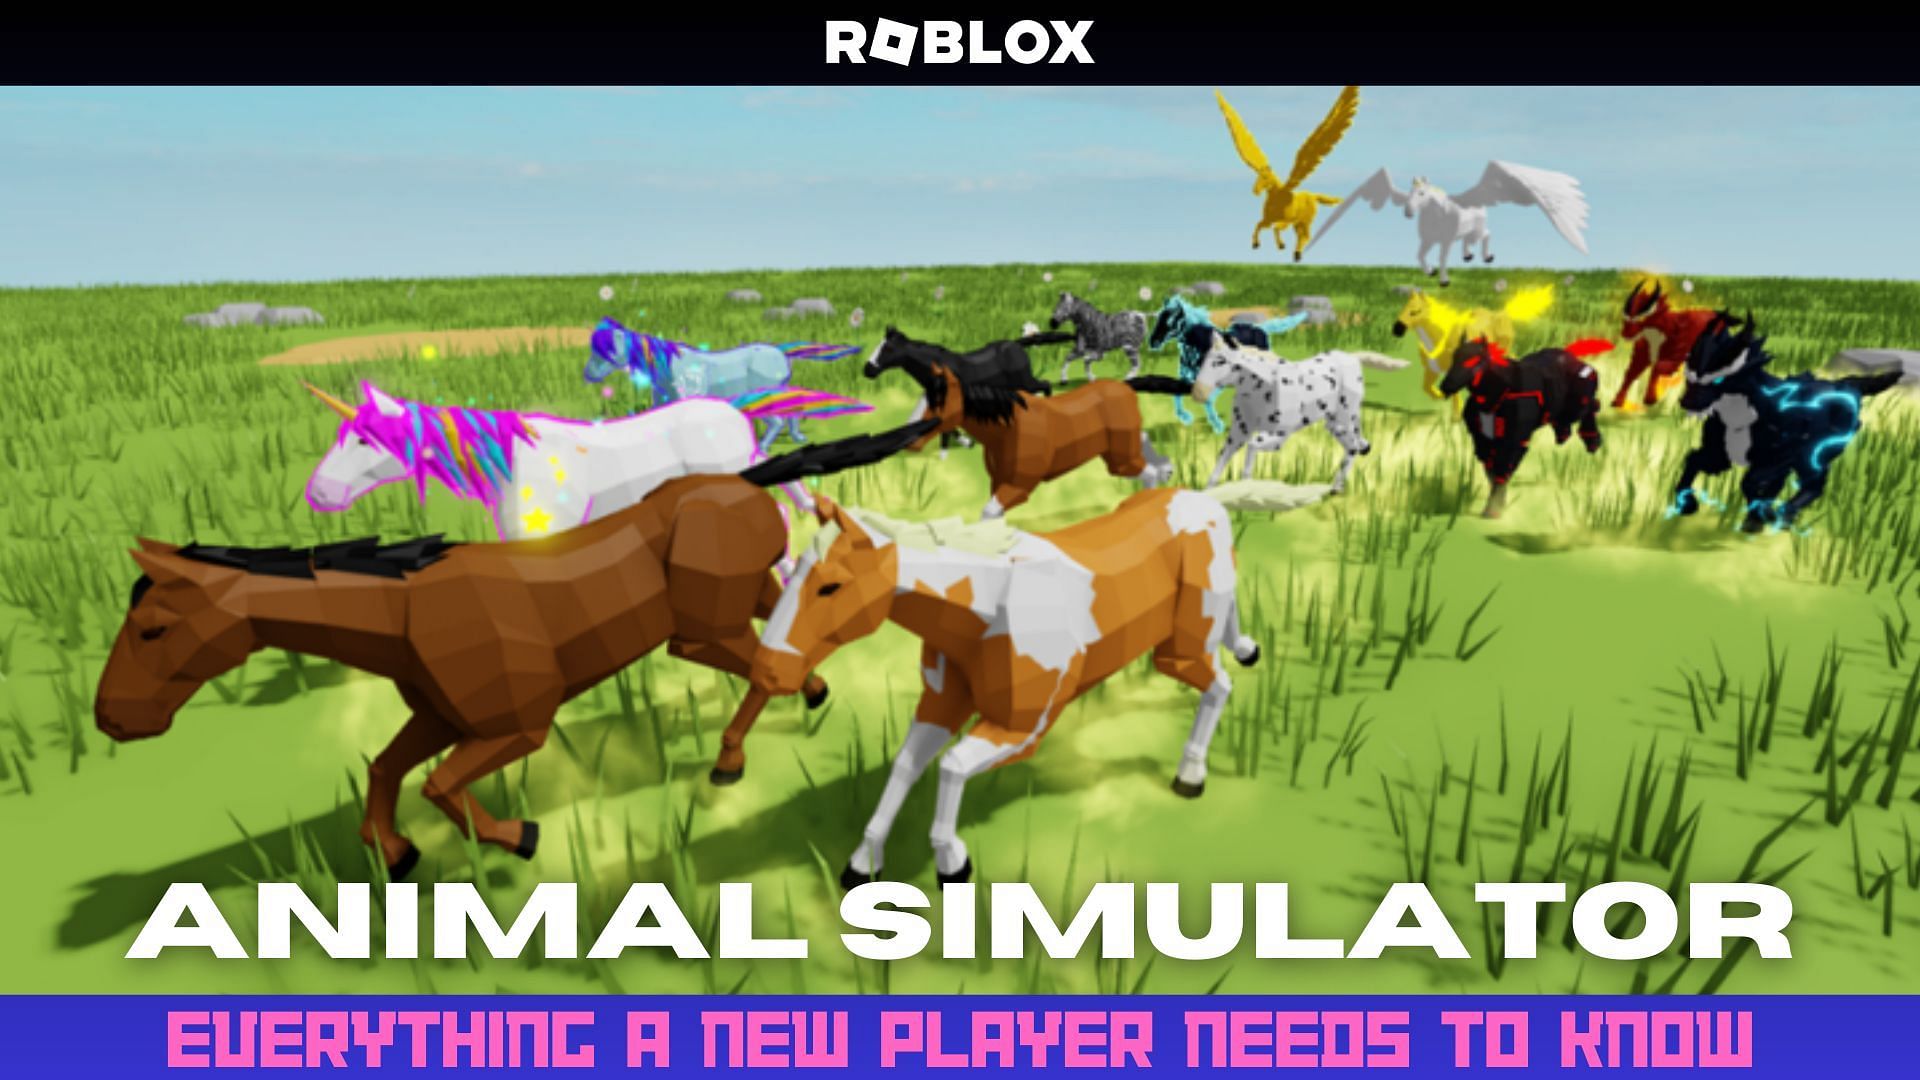 Experience life as an animal in Animal Simulator. (Image via Sportskeeda)